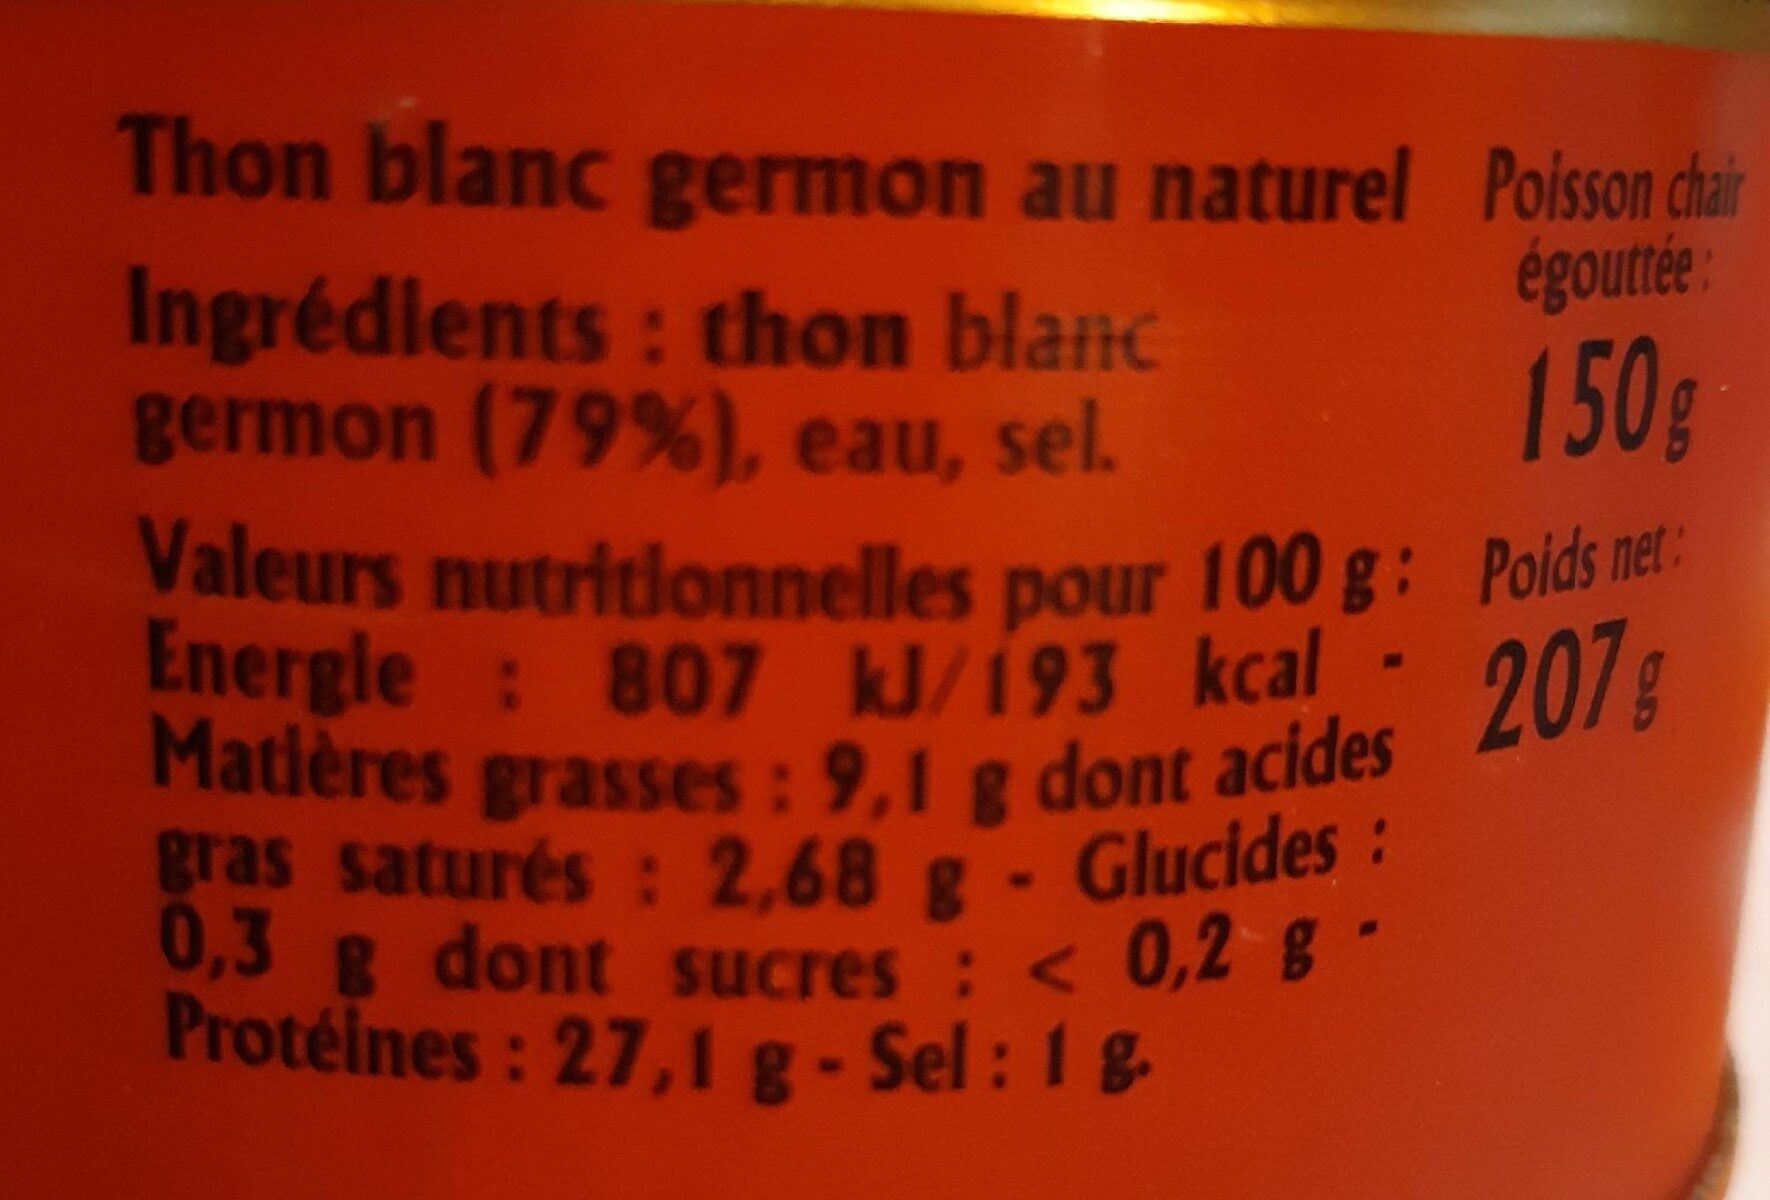 Thon blanc germon au naturel - Tableau nutritionnel